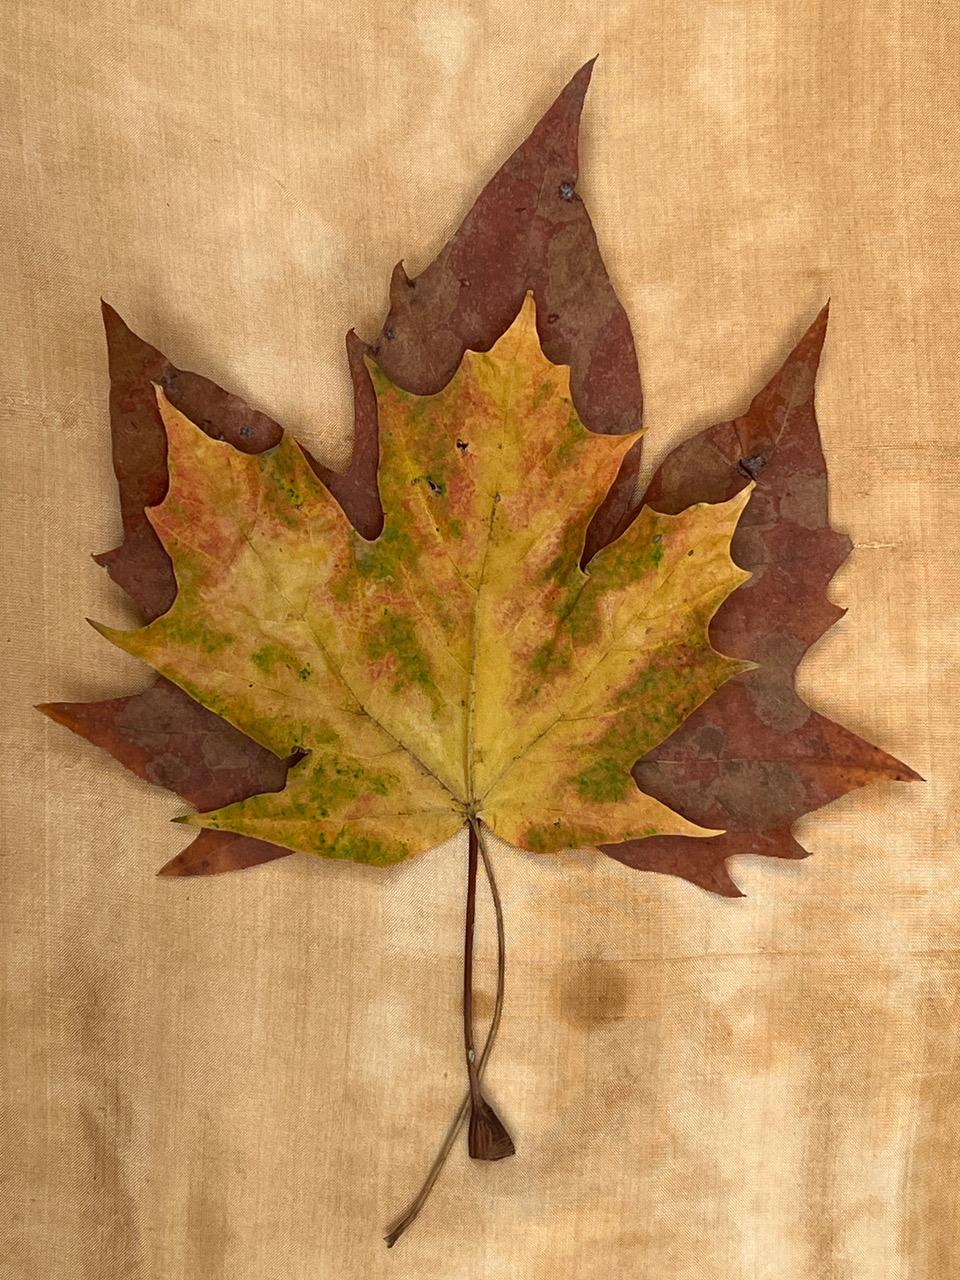 Nine Leaves: Gitter mit Blattfotografien von Natur-Stillleben in Gold, Rot und Grün – Photograph von Paul Cava